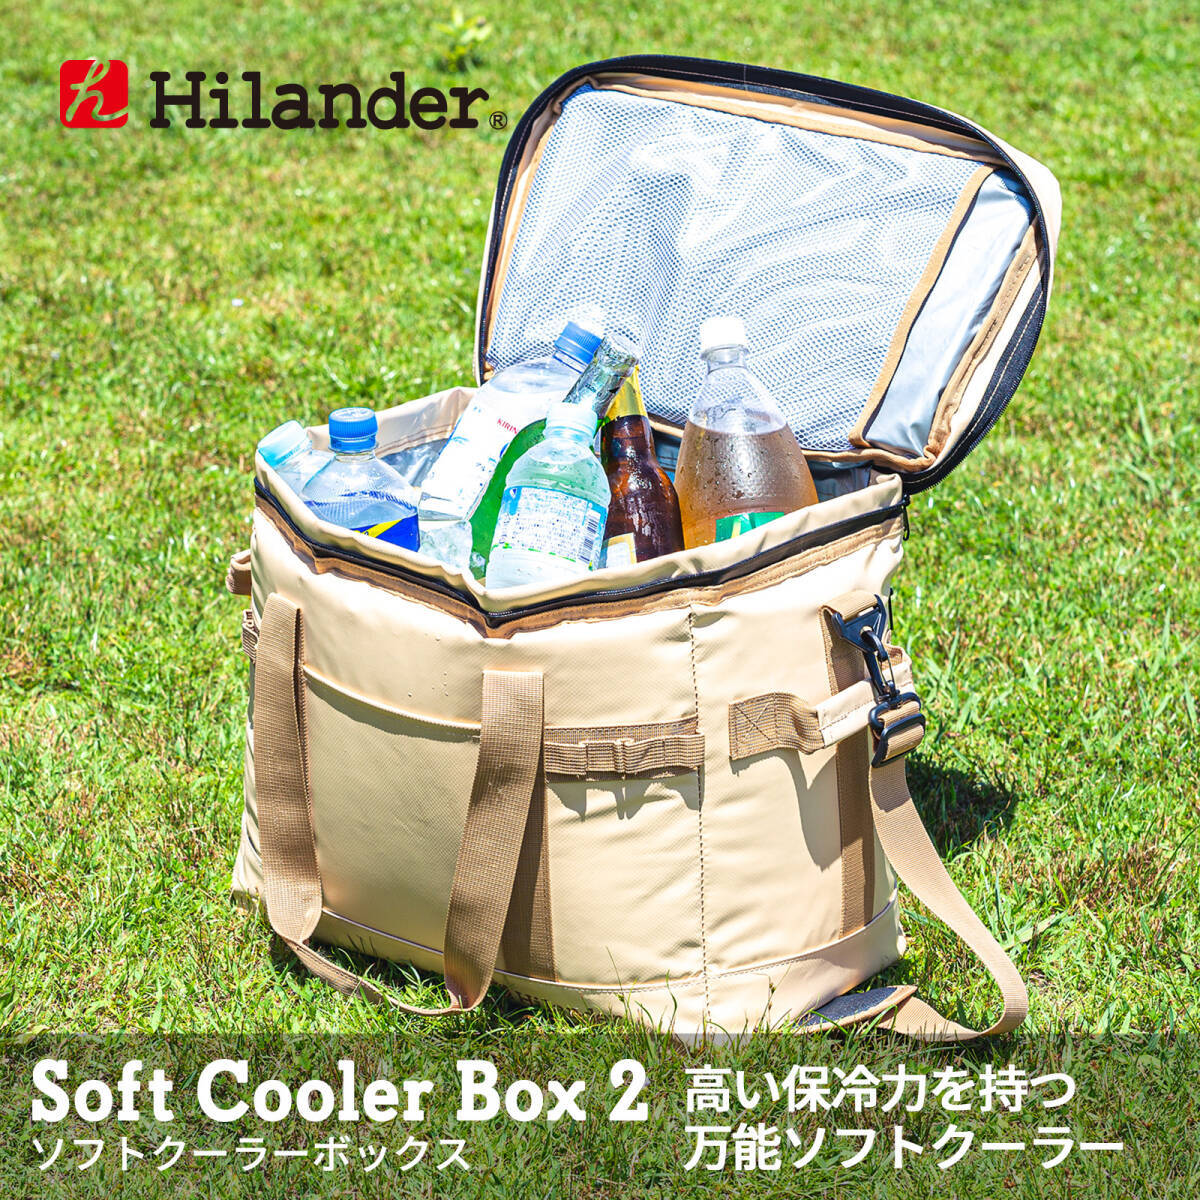 【新品未開封】Hilander(ハイランダー) ソフトクーラーボックス2 45L ベージュ S-045 /Y20269-V2の画像1